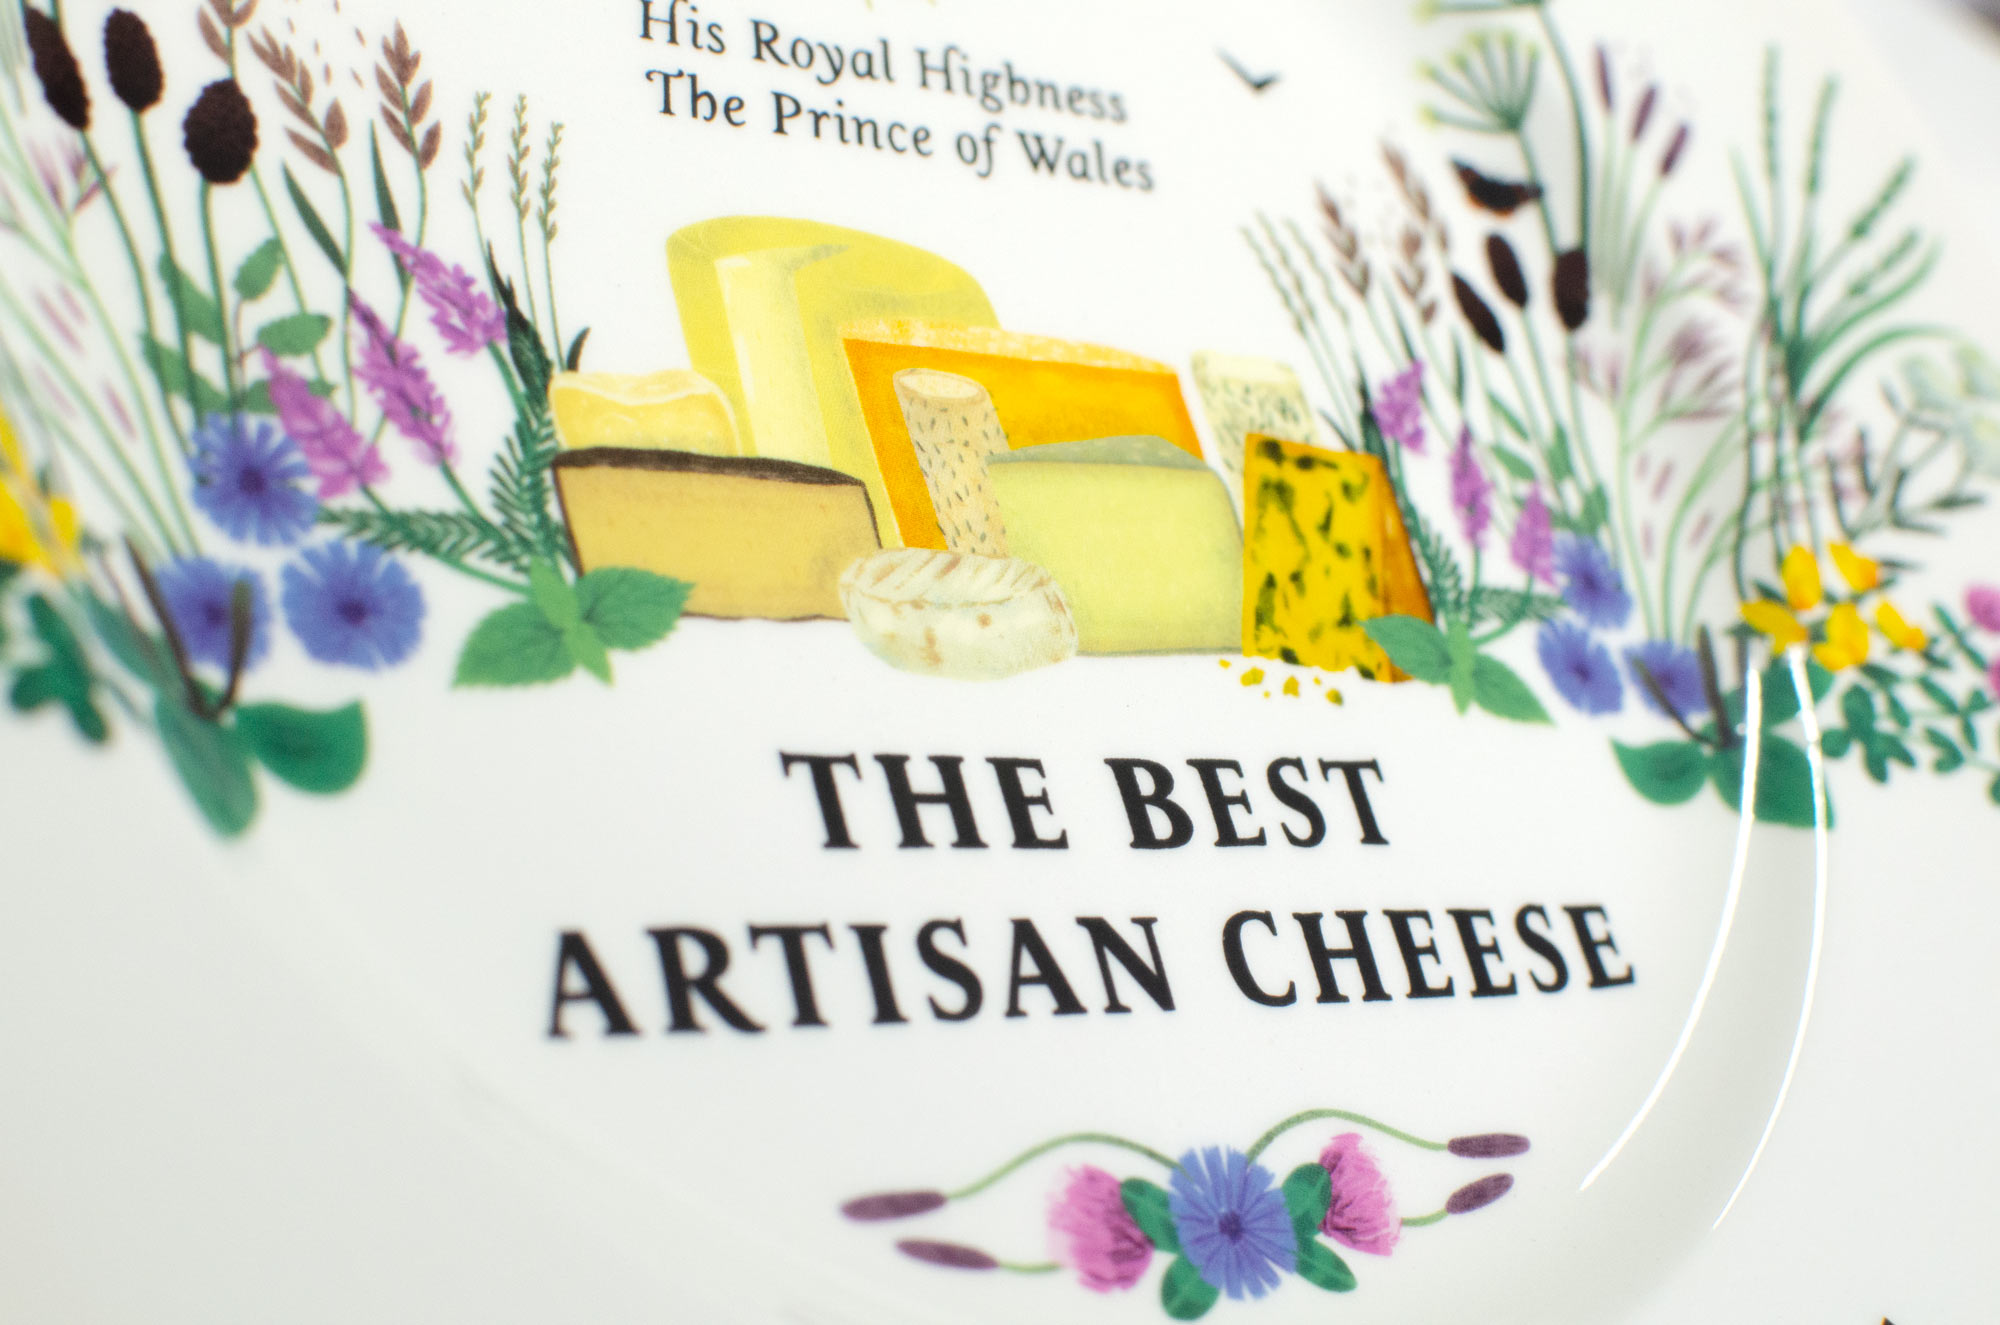 Best Artisan Cheese Plate Artwork closeup